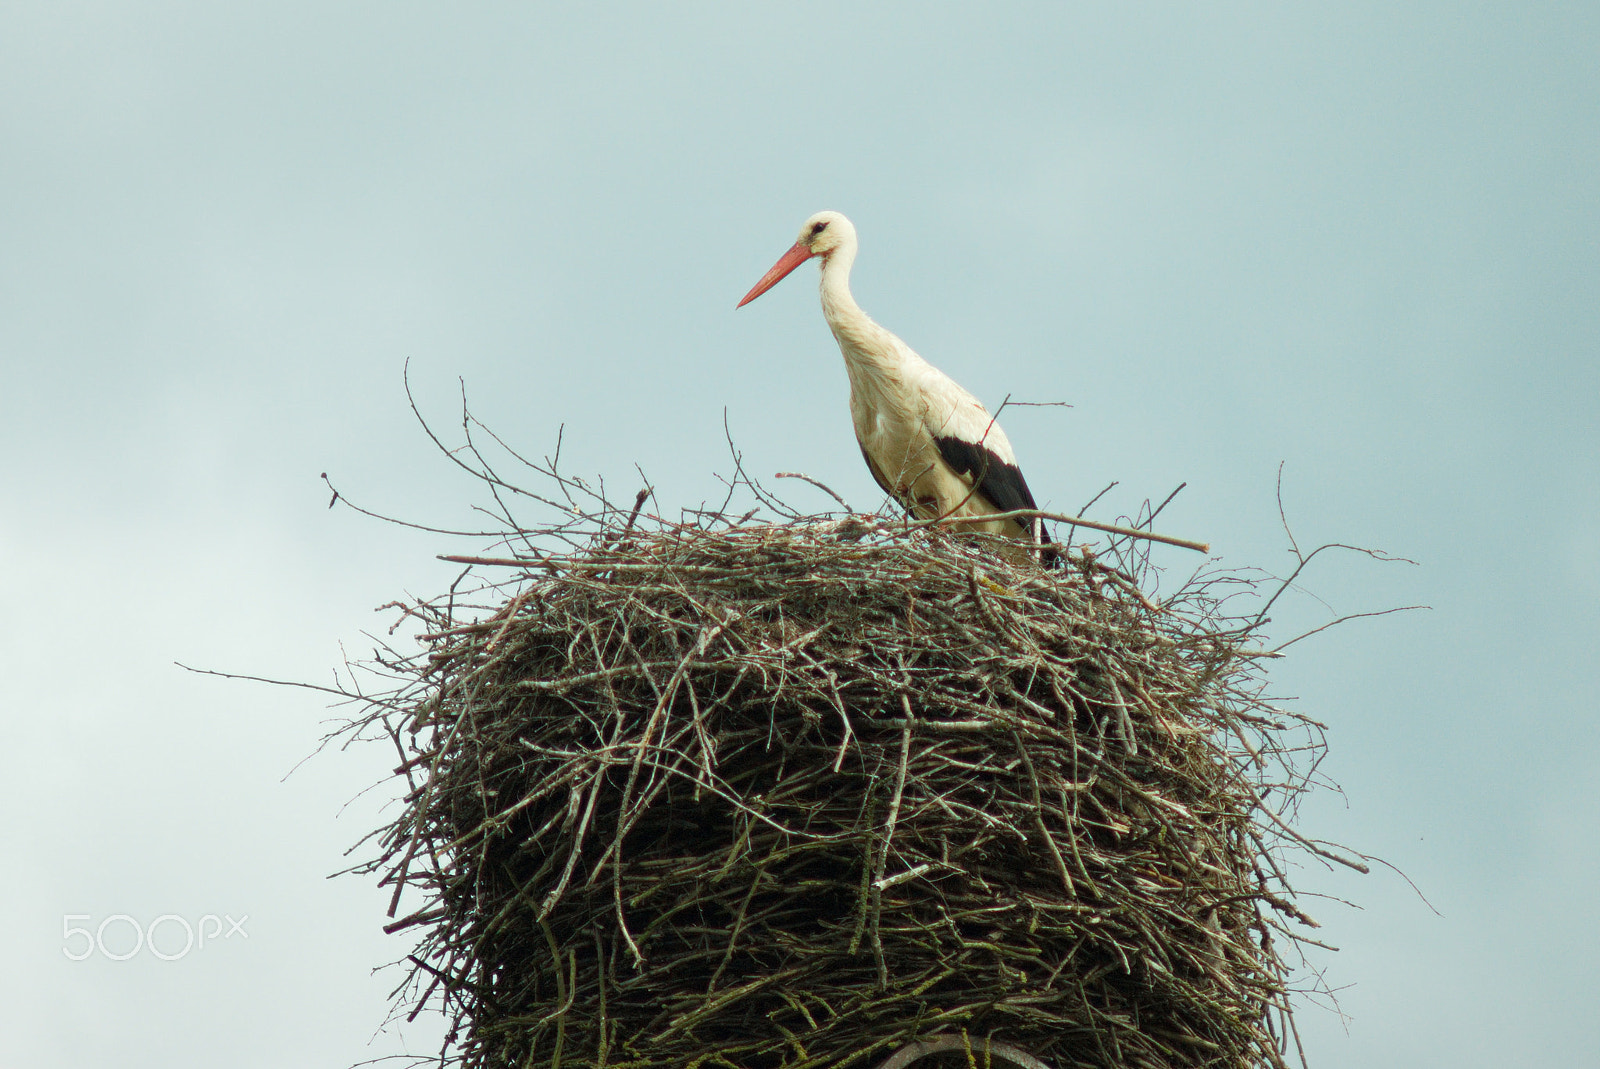 Sony Alpha DSLR-A390 sample photo. Stork on the nest photography